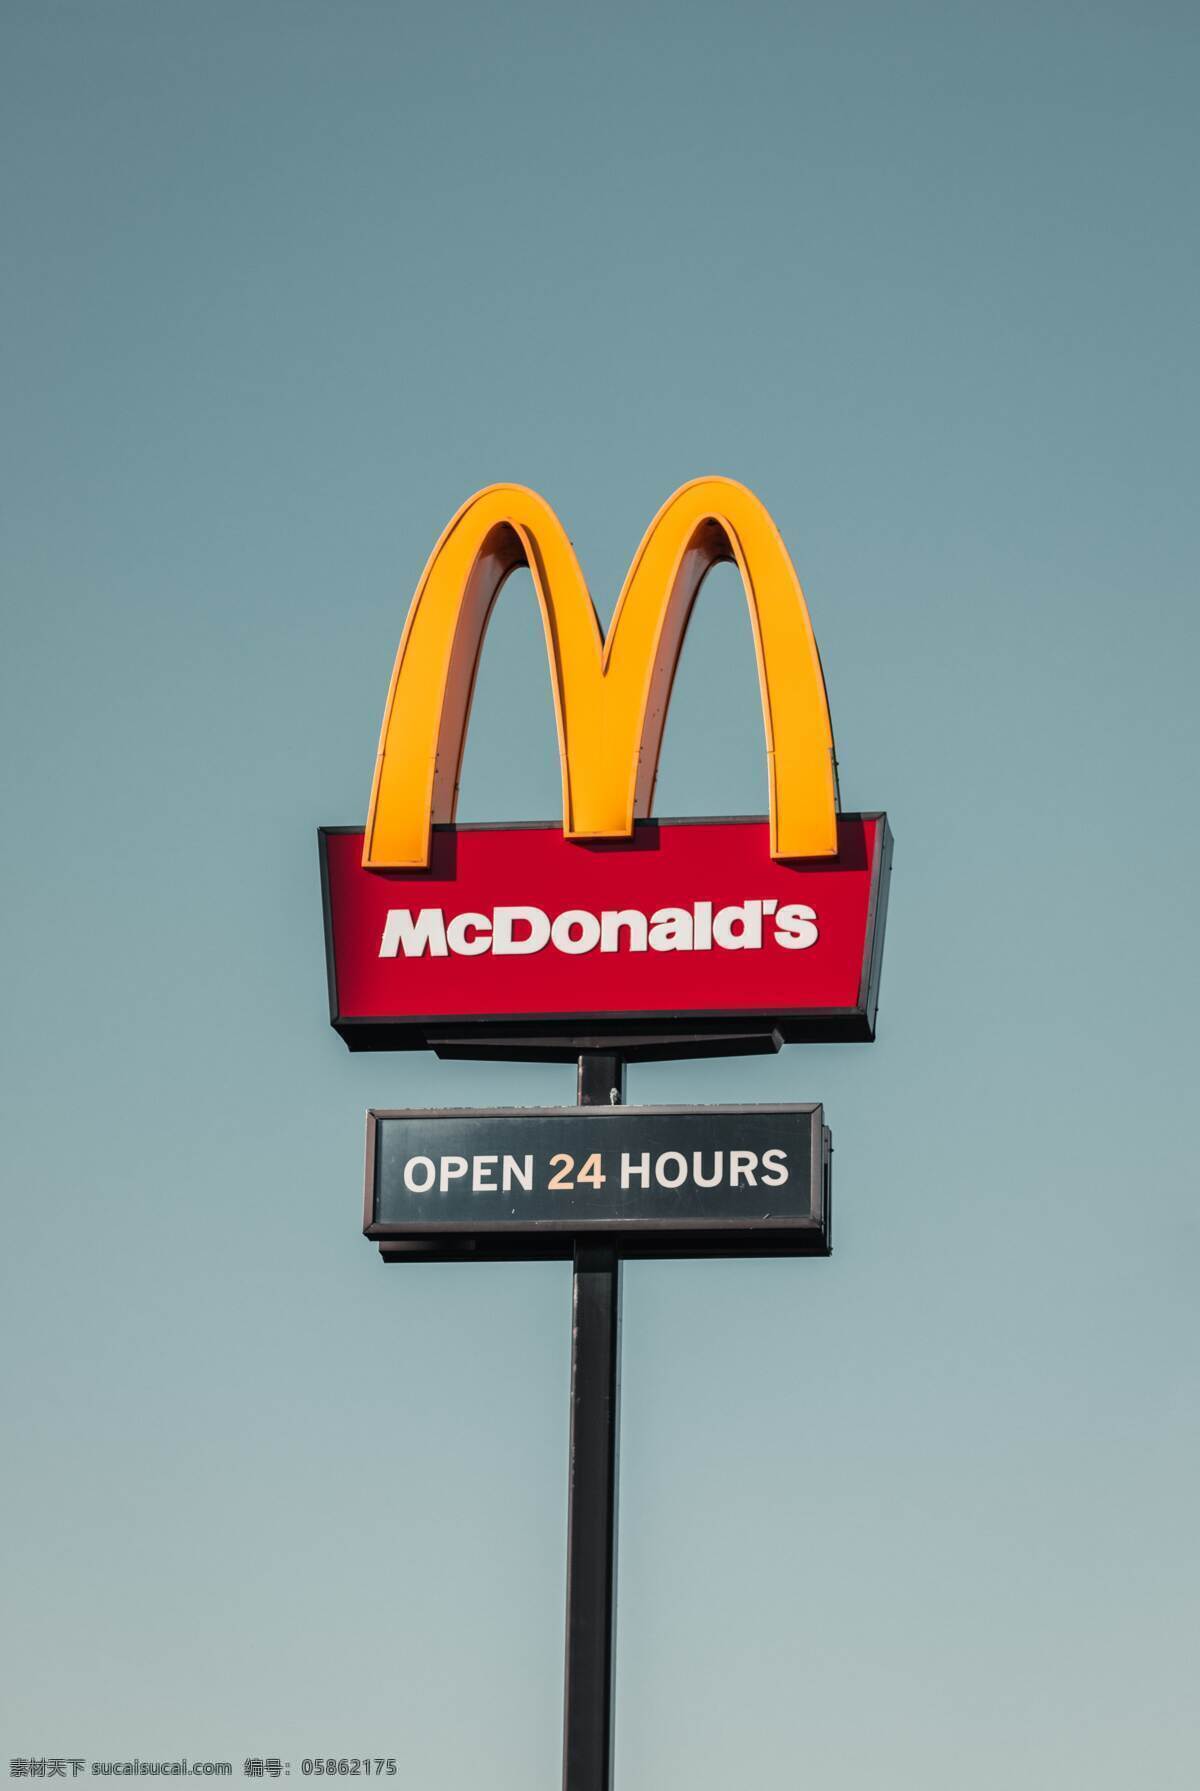 麦当劳广告牌 麦当劳 金拱门 汉堡 快餐 可乐 灯杆 金色 红色 生活百科 生活素材